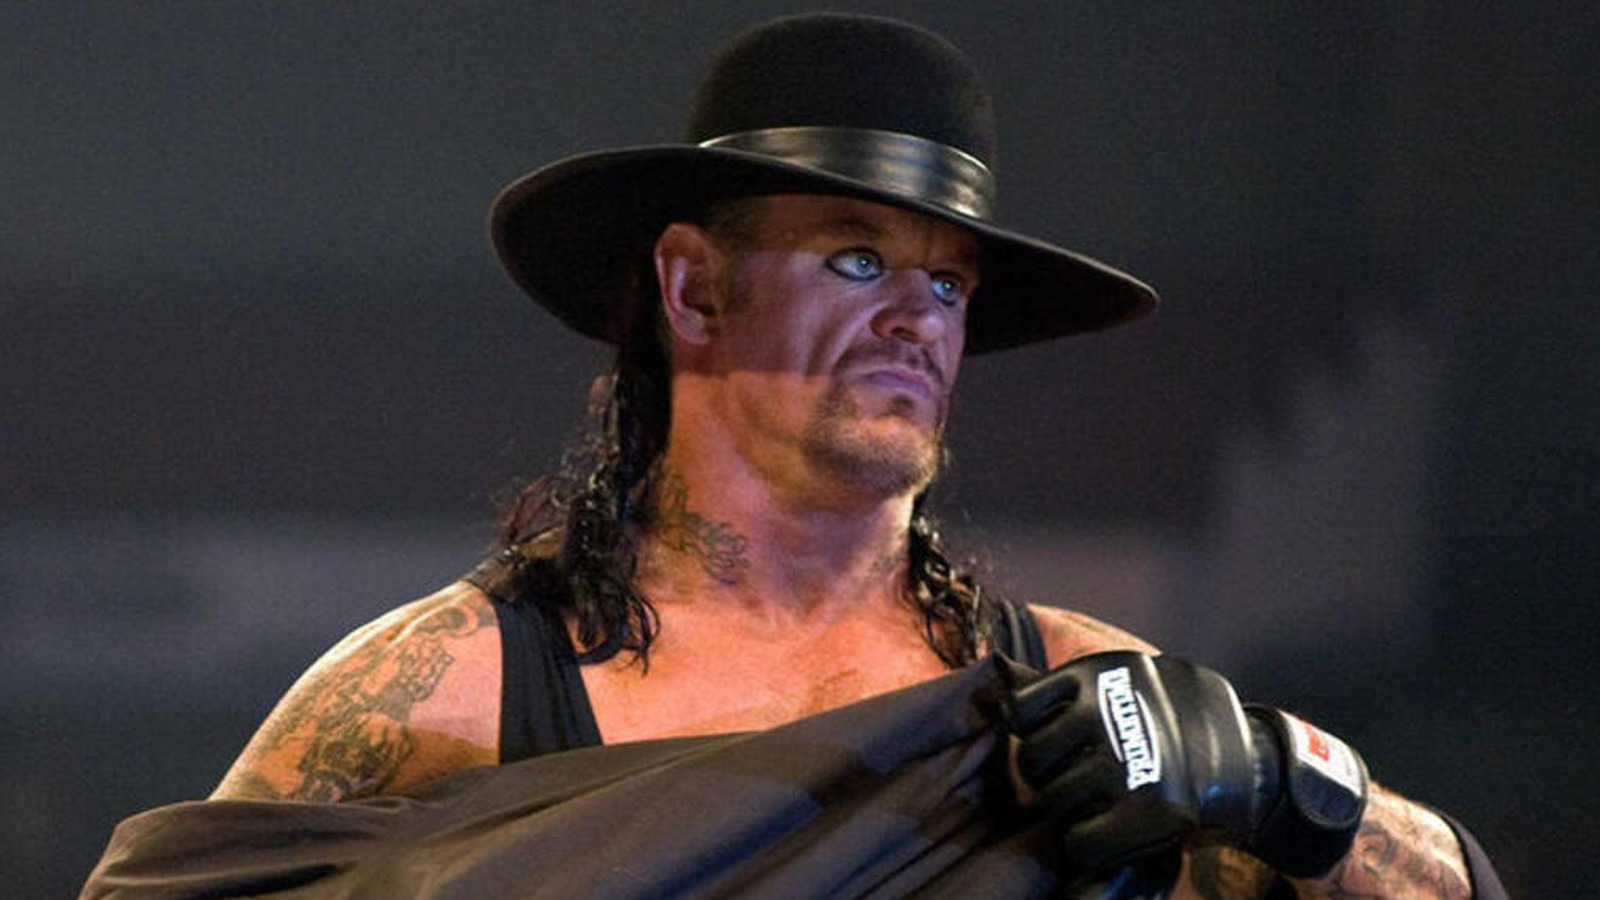 Paul Heyman cree que Vince McMahon siempre habría terminado con la racha del Undertaker